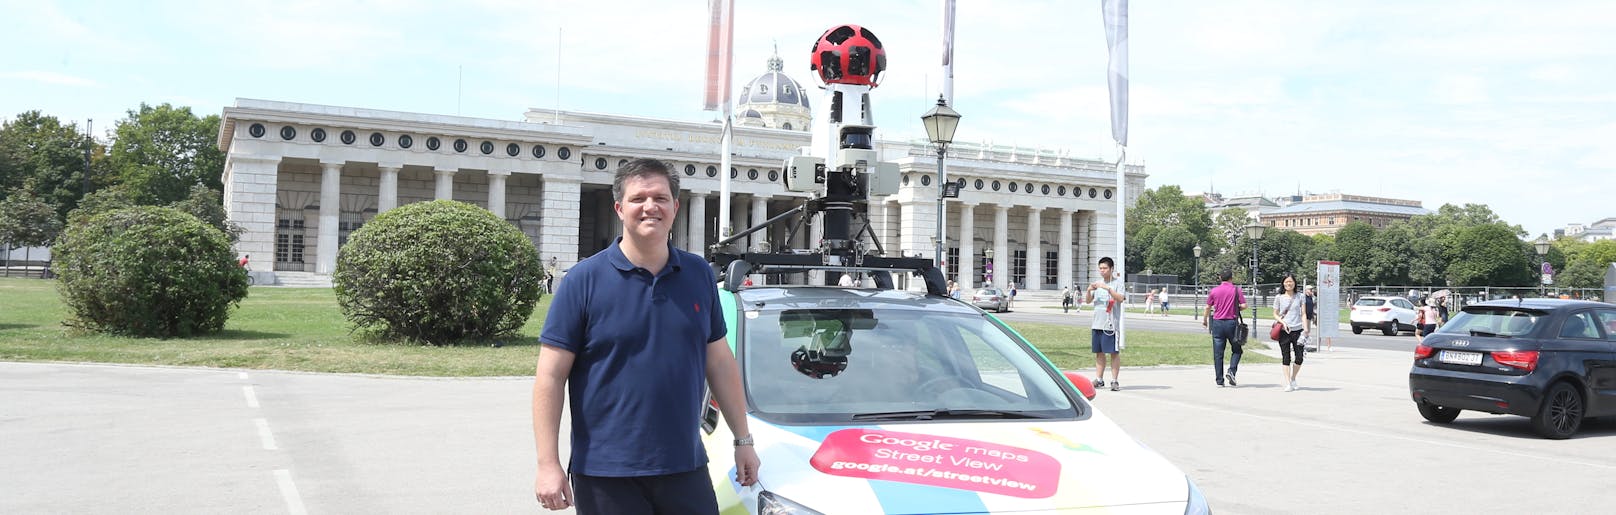 Fasching-Kapfenberger mit einem Google-Kameraauto in Wien